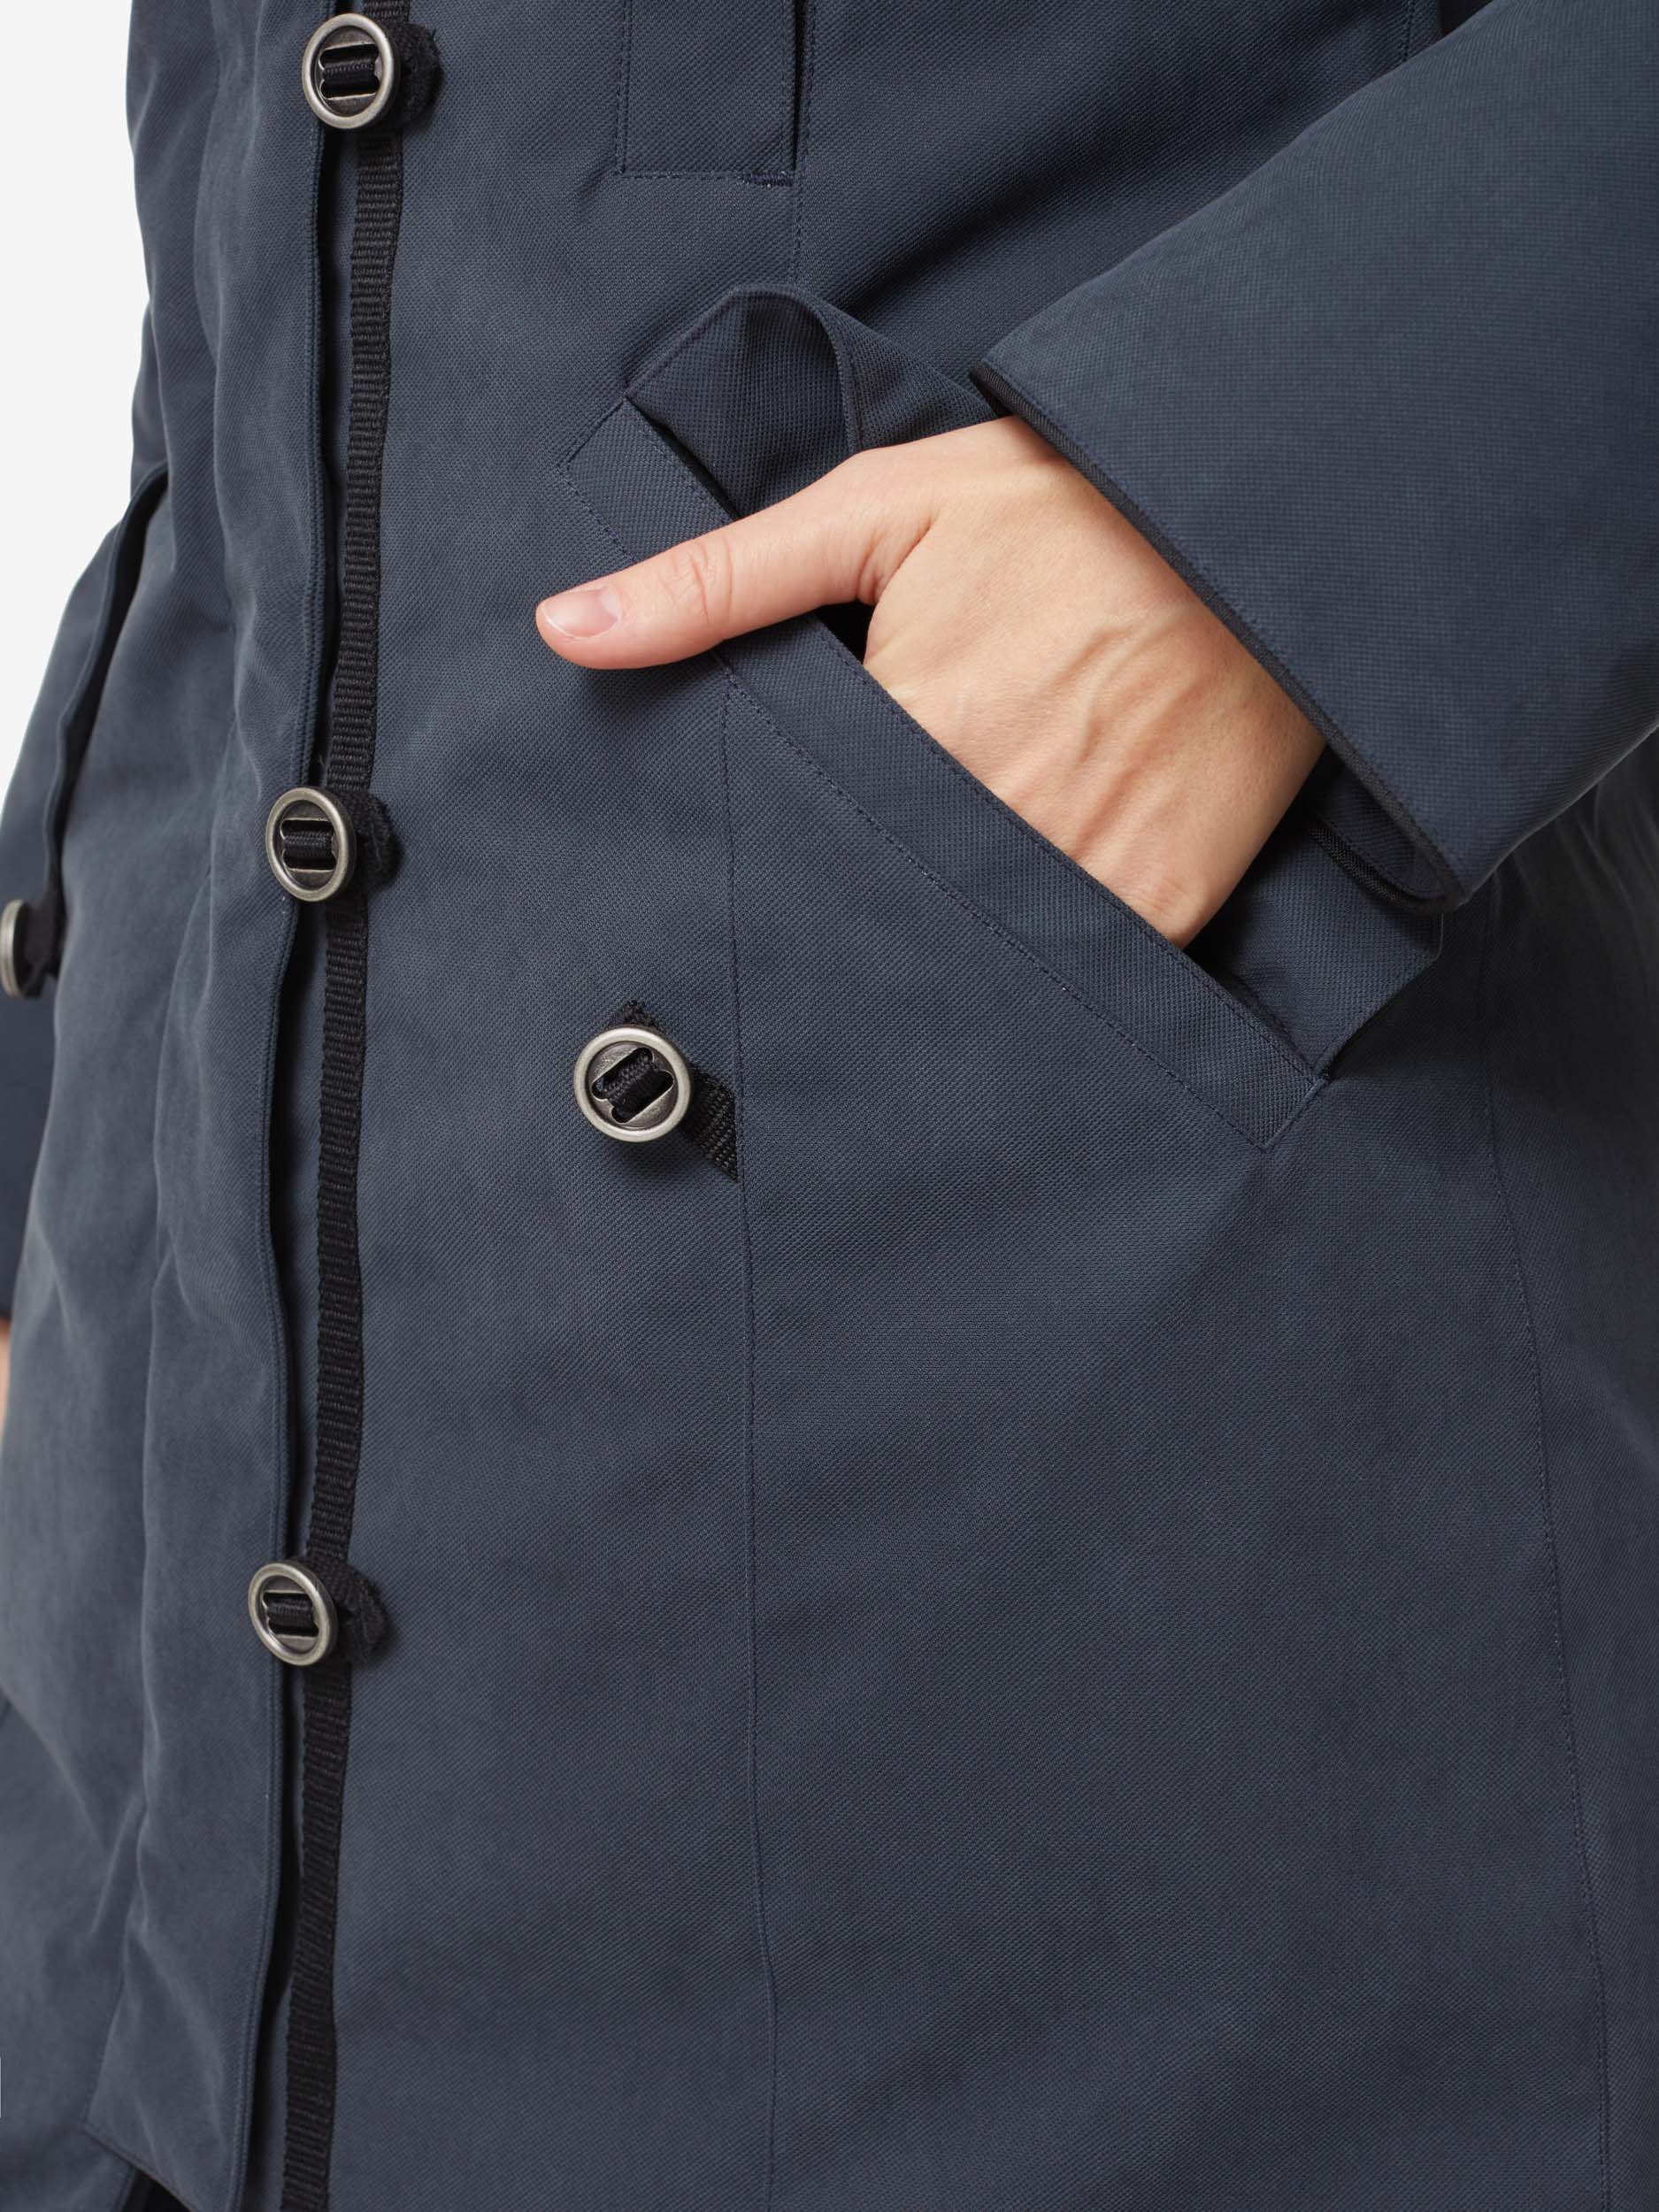 Куртка BASK, размер 48, цвет синий 19H10-9309-048 HATANGA V3 - фото 7